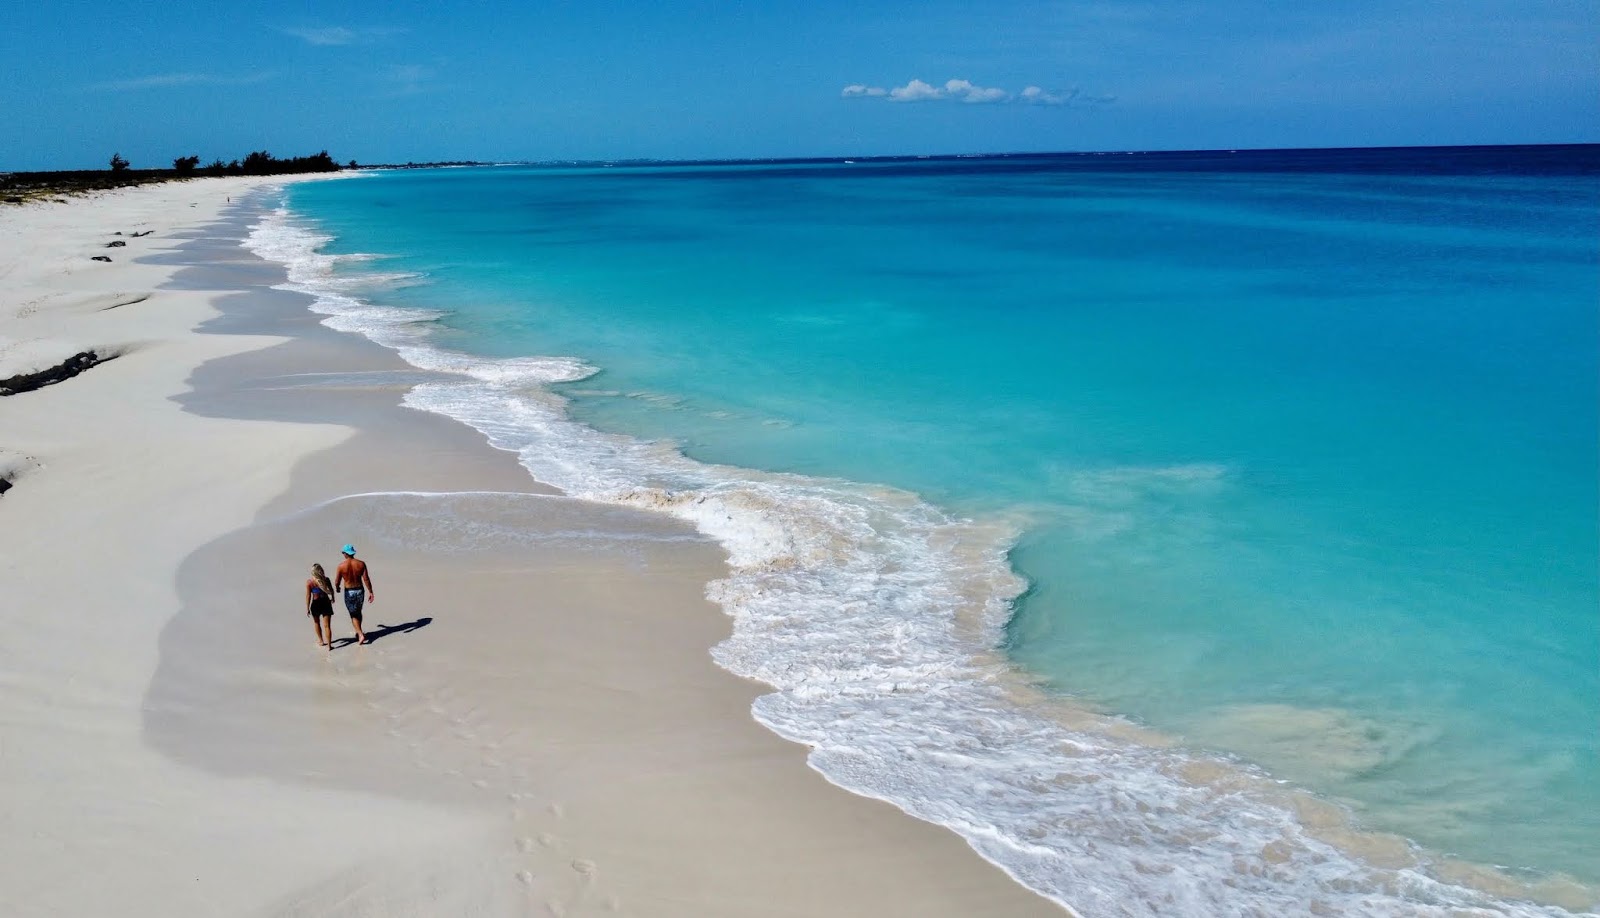 Pine Cay beach'in fotoğrafı parlak ince kum yüzey ile